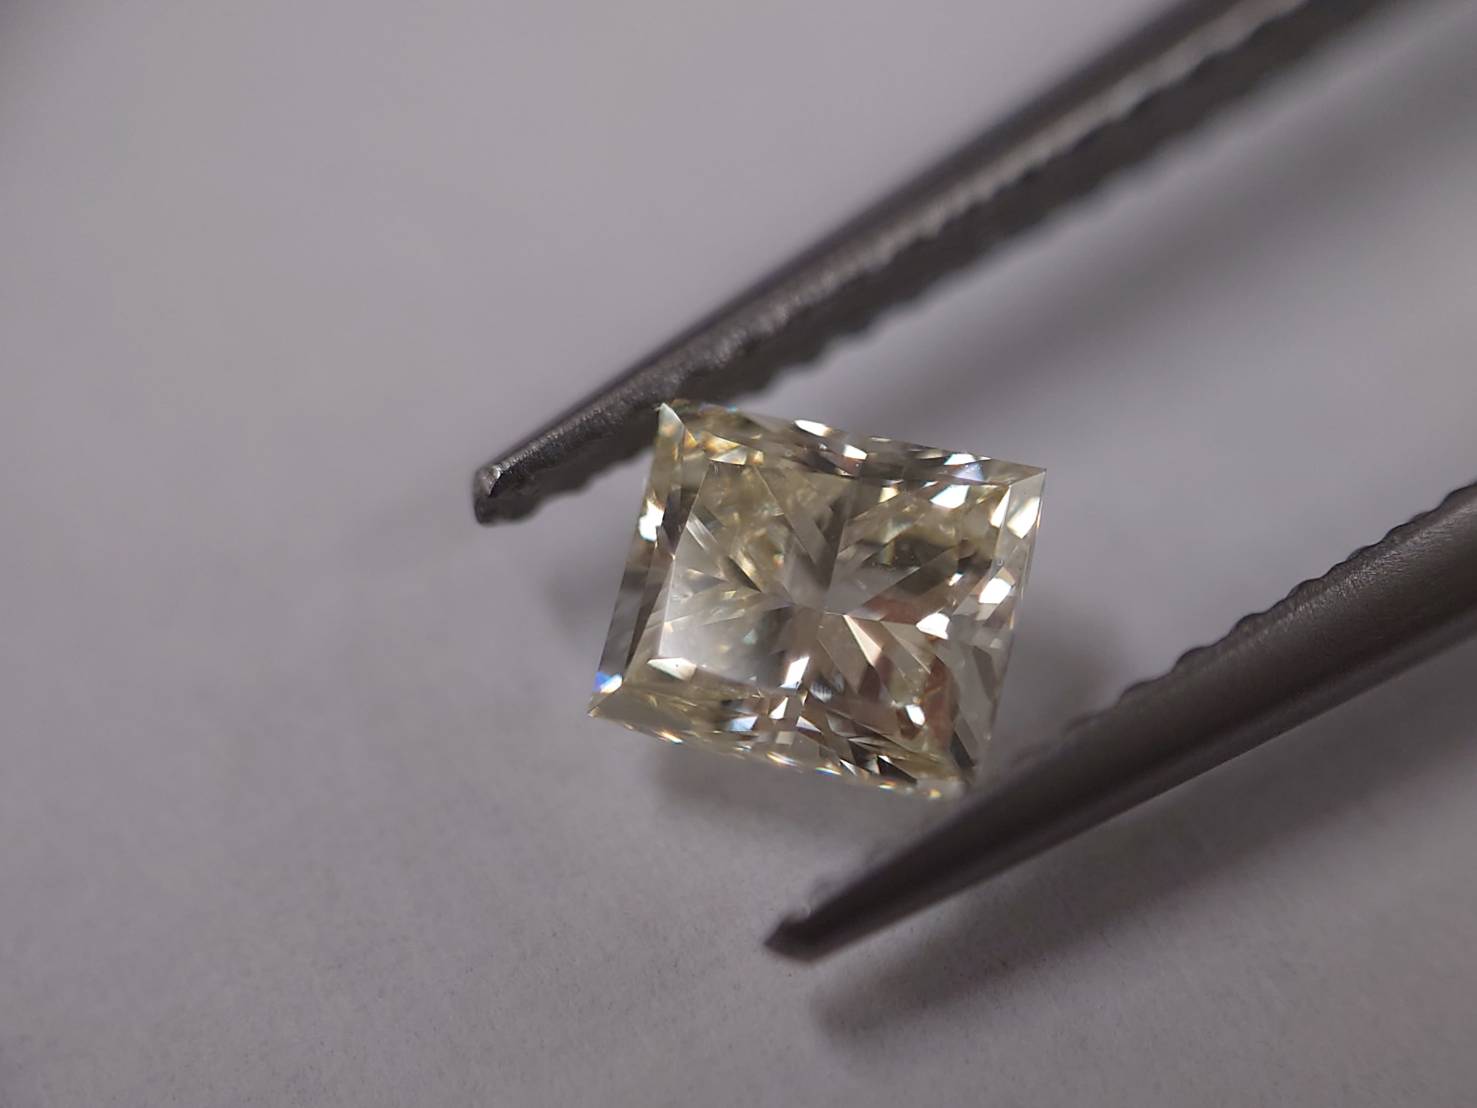 特別なプロポーションのダイヤモンド、長方形のイエローダイヤ